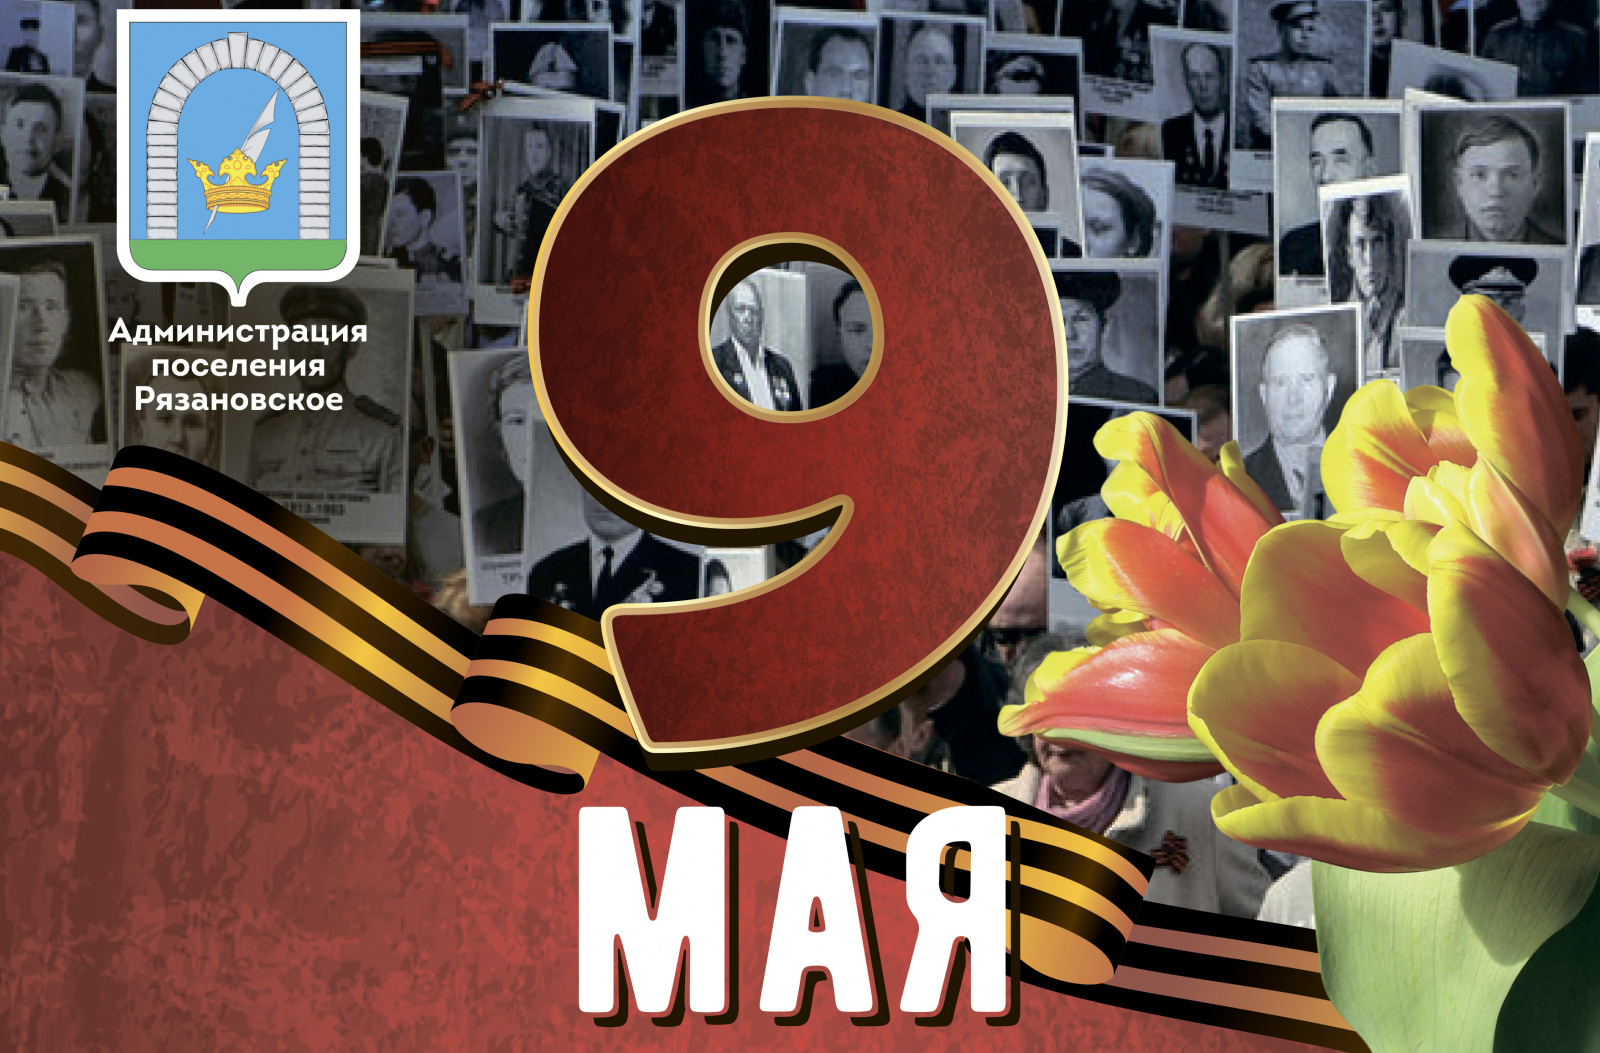 День Победы пройдет 9 мая в поселении Рязановское